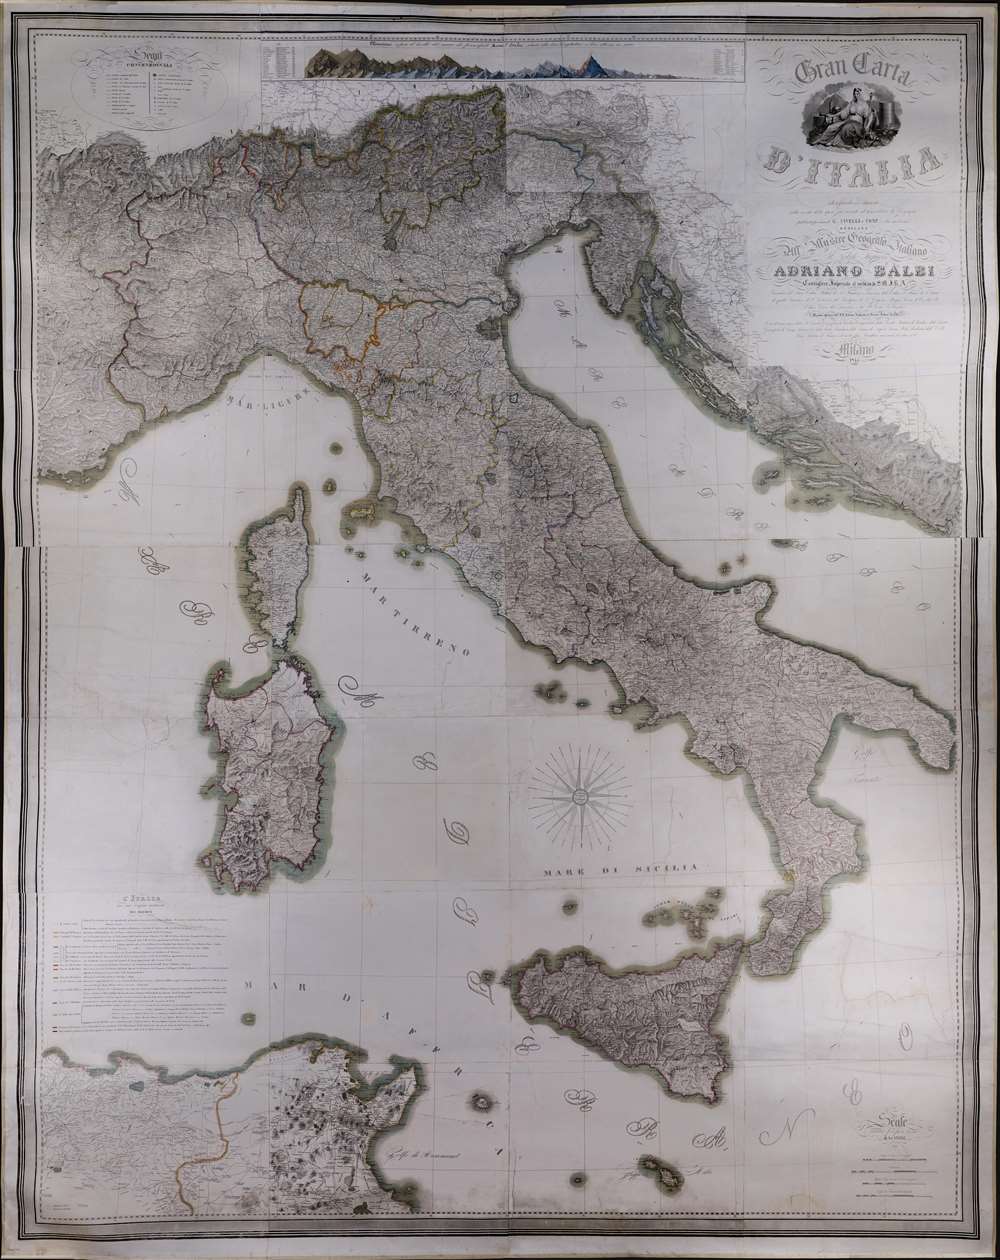 Gran Carta d'Italia. - Main View